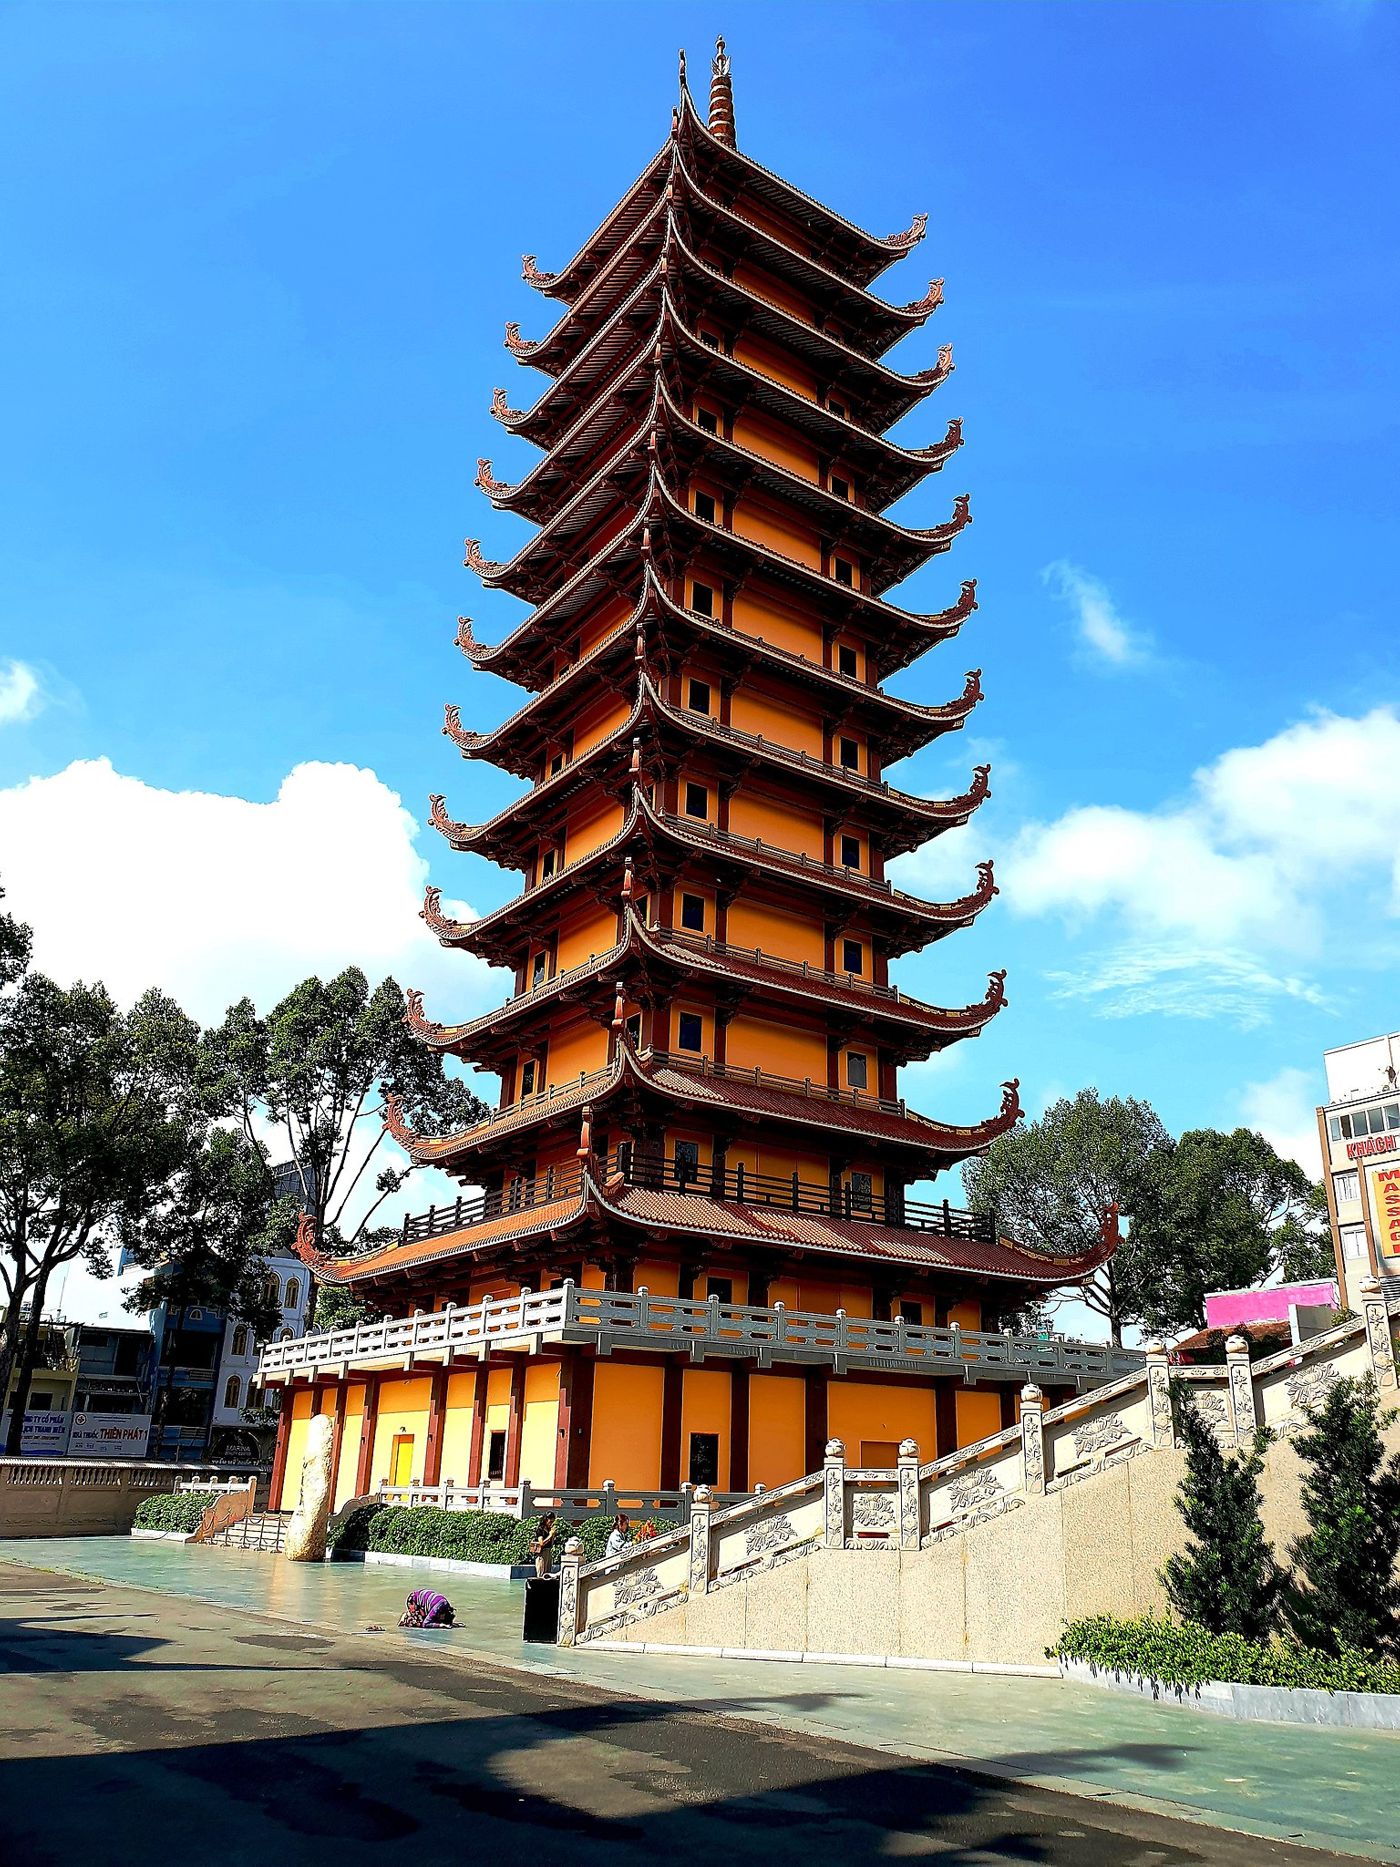 Vietnam National Pagoda (Vietnam Quoc Tu)